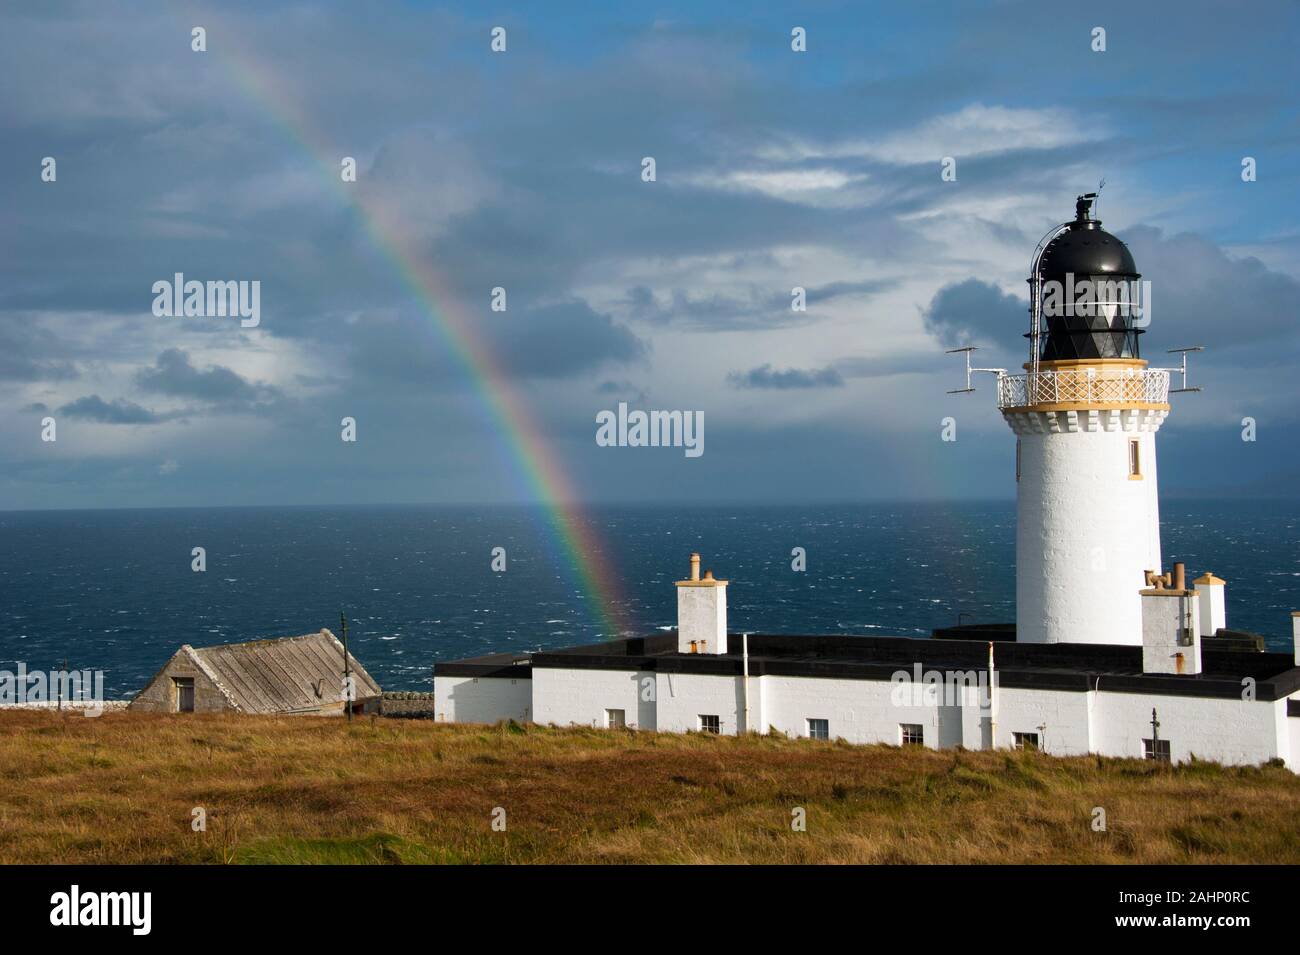 Leuchtturm mit Regenbogen, Dunnett Kopf, Schottland, Großbritannien, Europa/am nördlichsten Punkt des europäischen Festlandes Großbritannien, Ostern Kopf | Leuchtturm mit Regenbog Stockfoto